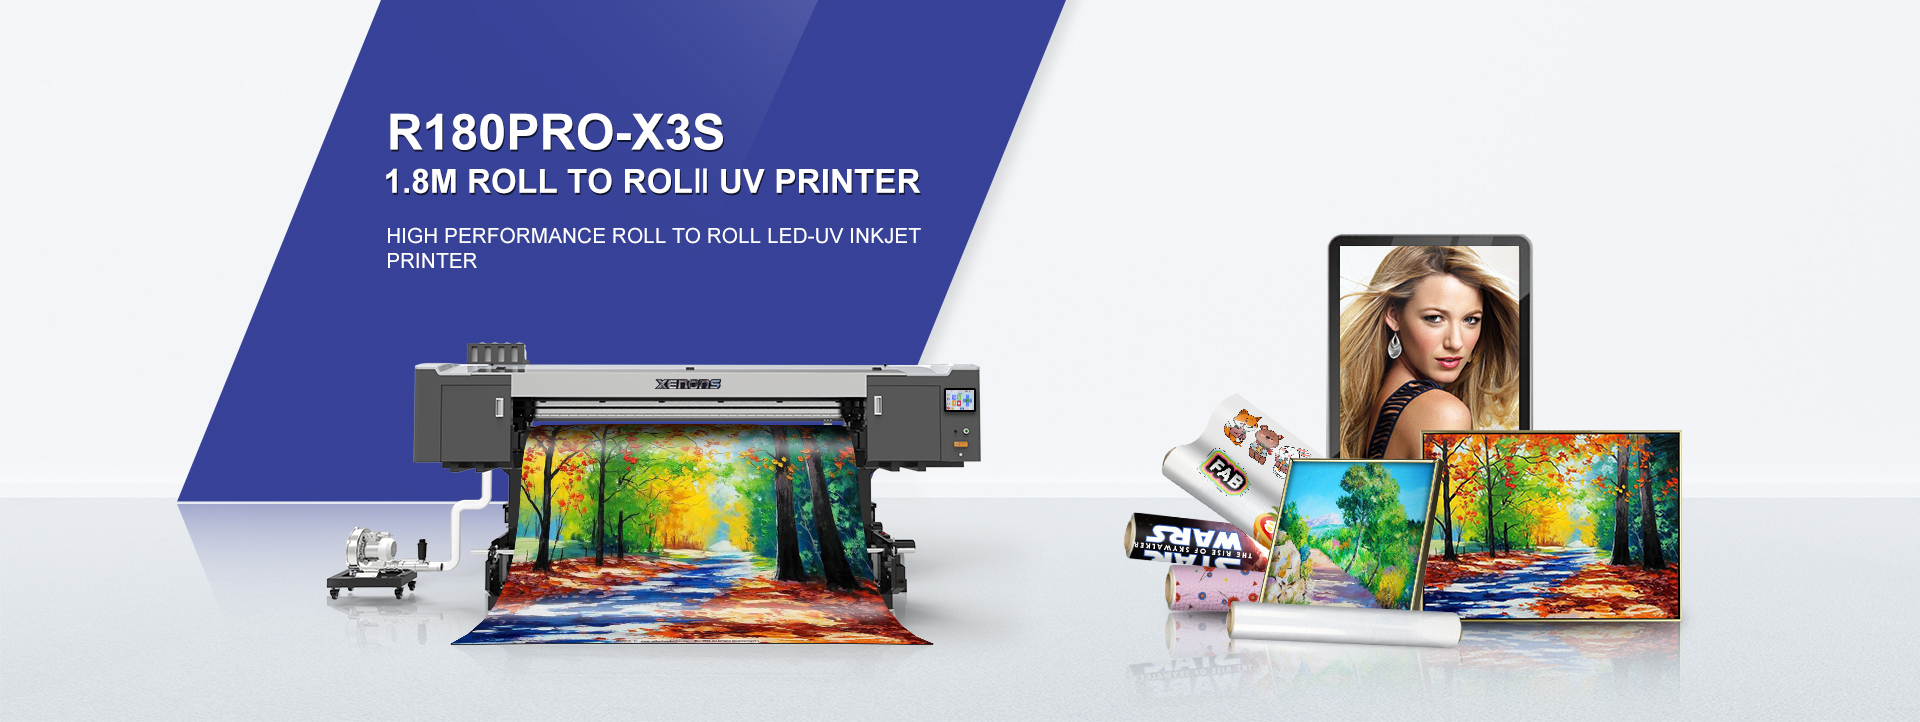 Xenons R180-X3S UV Printer From Xenons